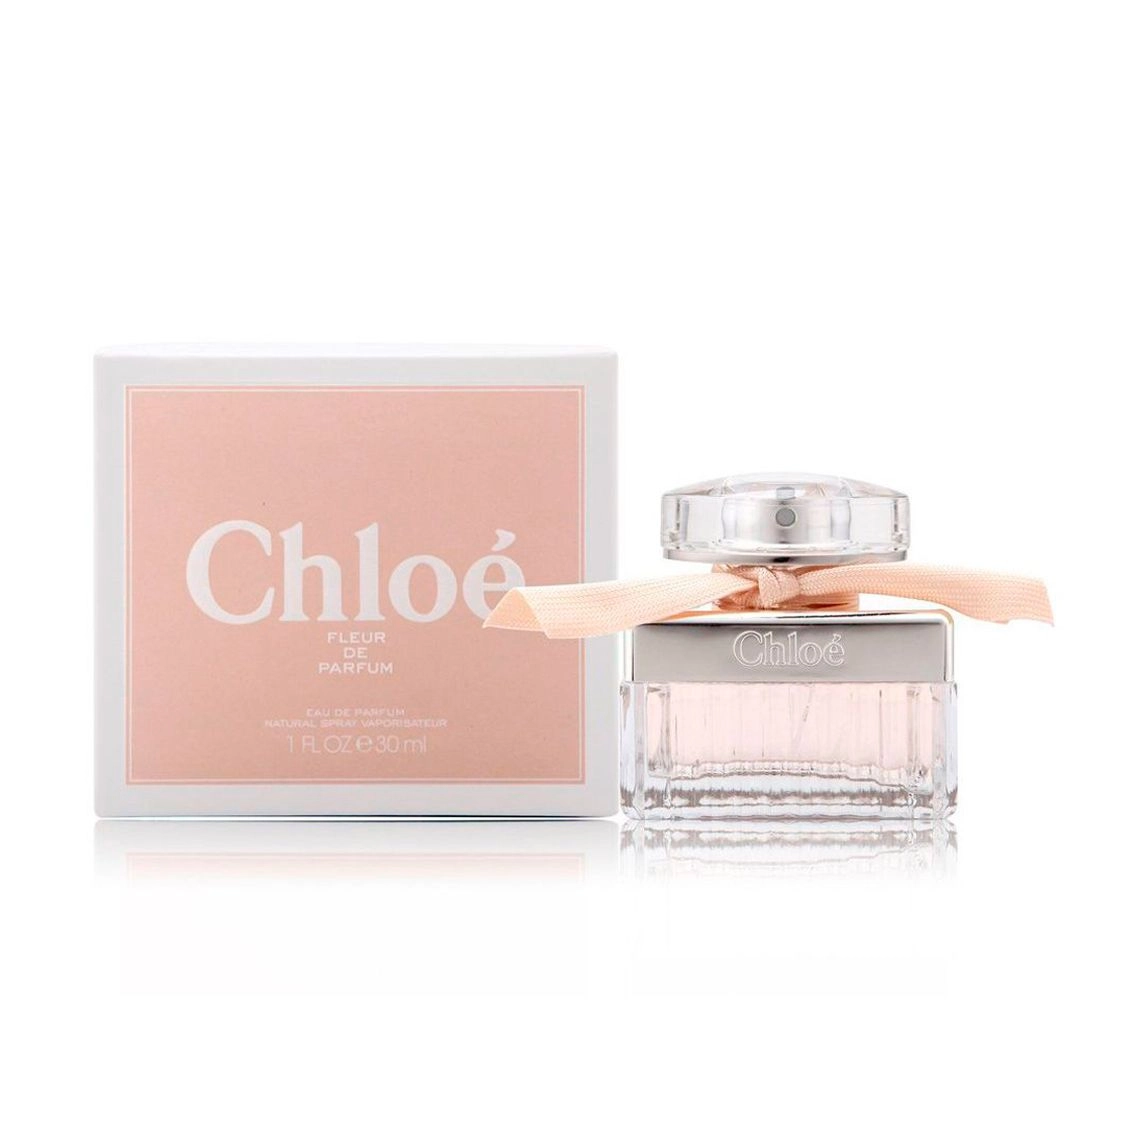 Chloe Fleur De Parfum парфюмированная вода женская - фото N1